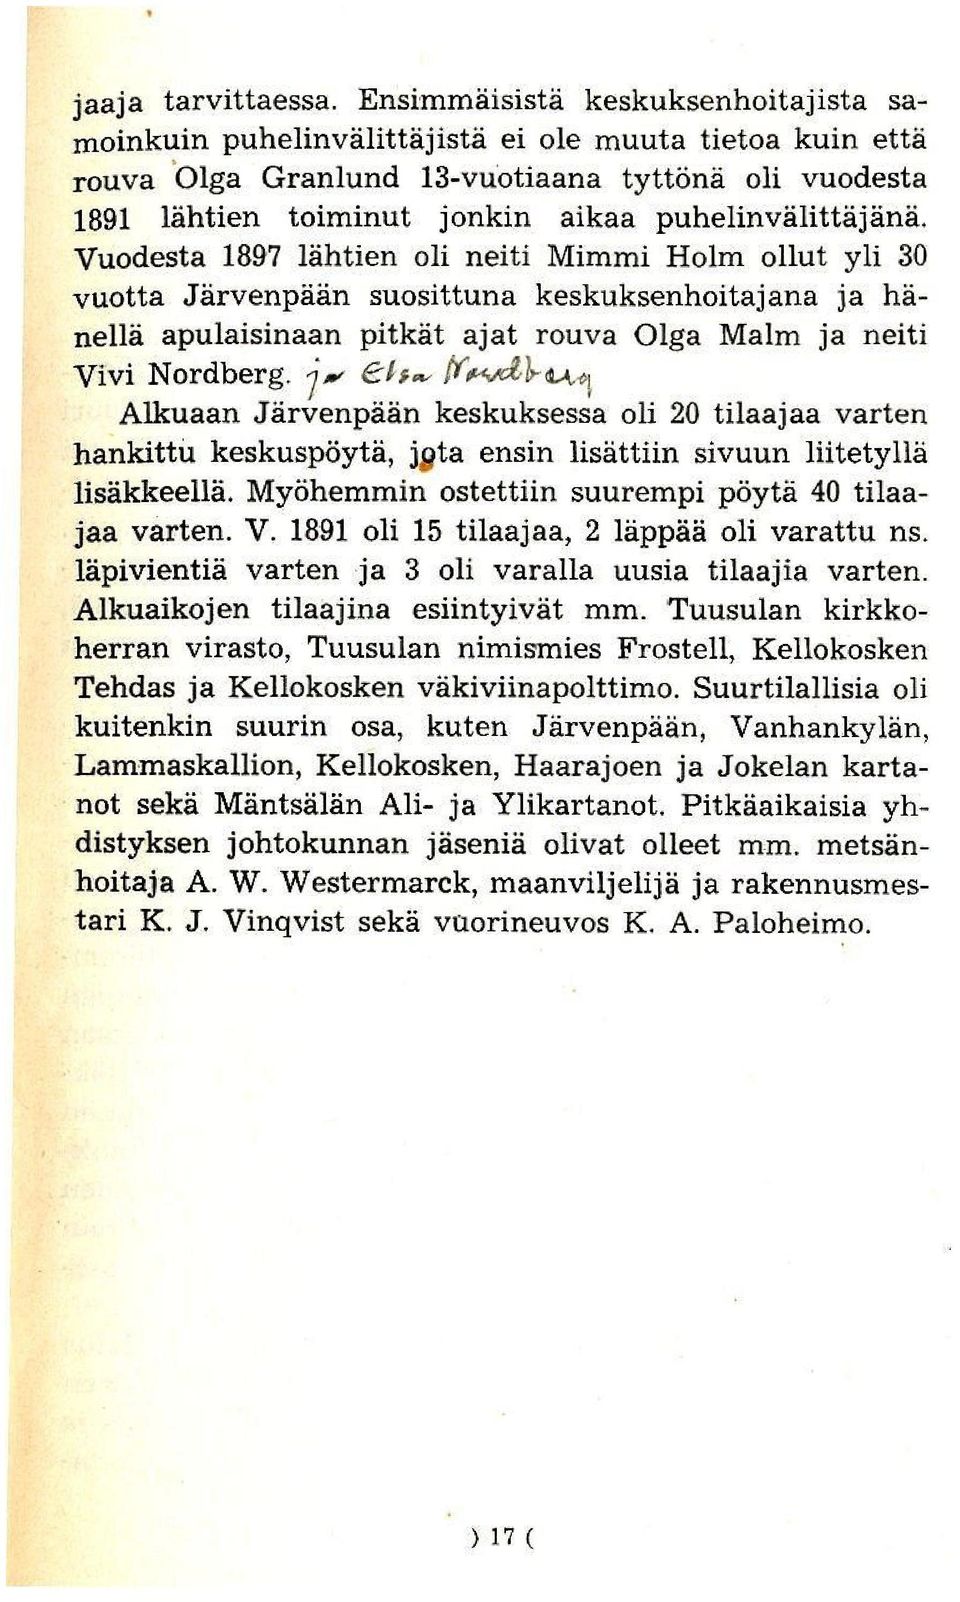 puhelinvalittajana. Vuodesta 1897 lahtien oli neiti Mimmi Holm ollut yli 30 vuotta Jarvenpaan suosittuna keskuksenhoitajana ja hanella apulaisinaan pitkat ajat rouva Olga MaIm ja neiti Vivi Nordberg.